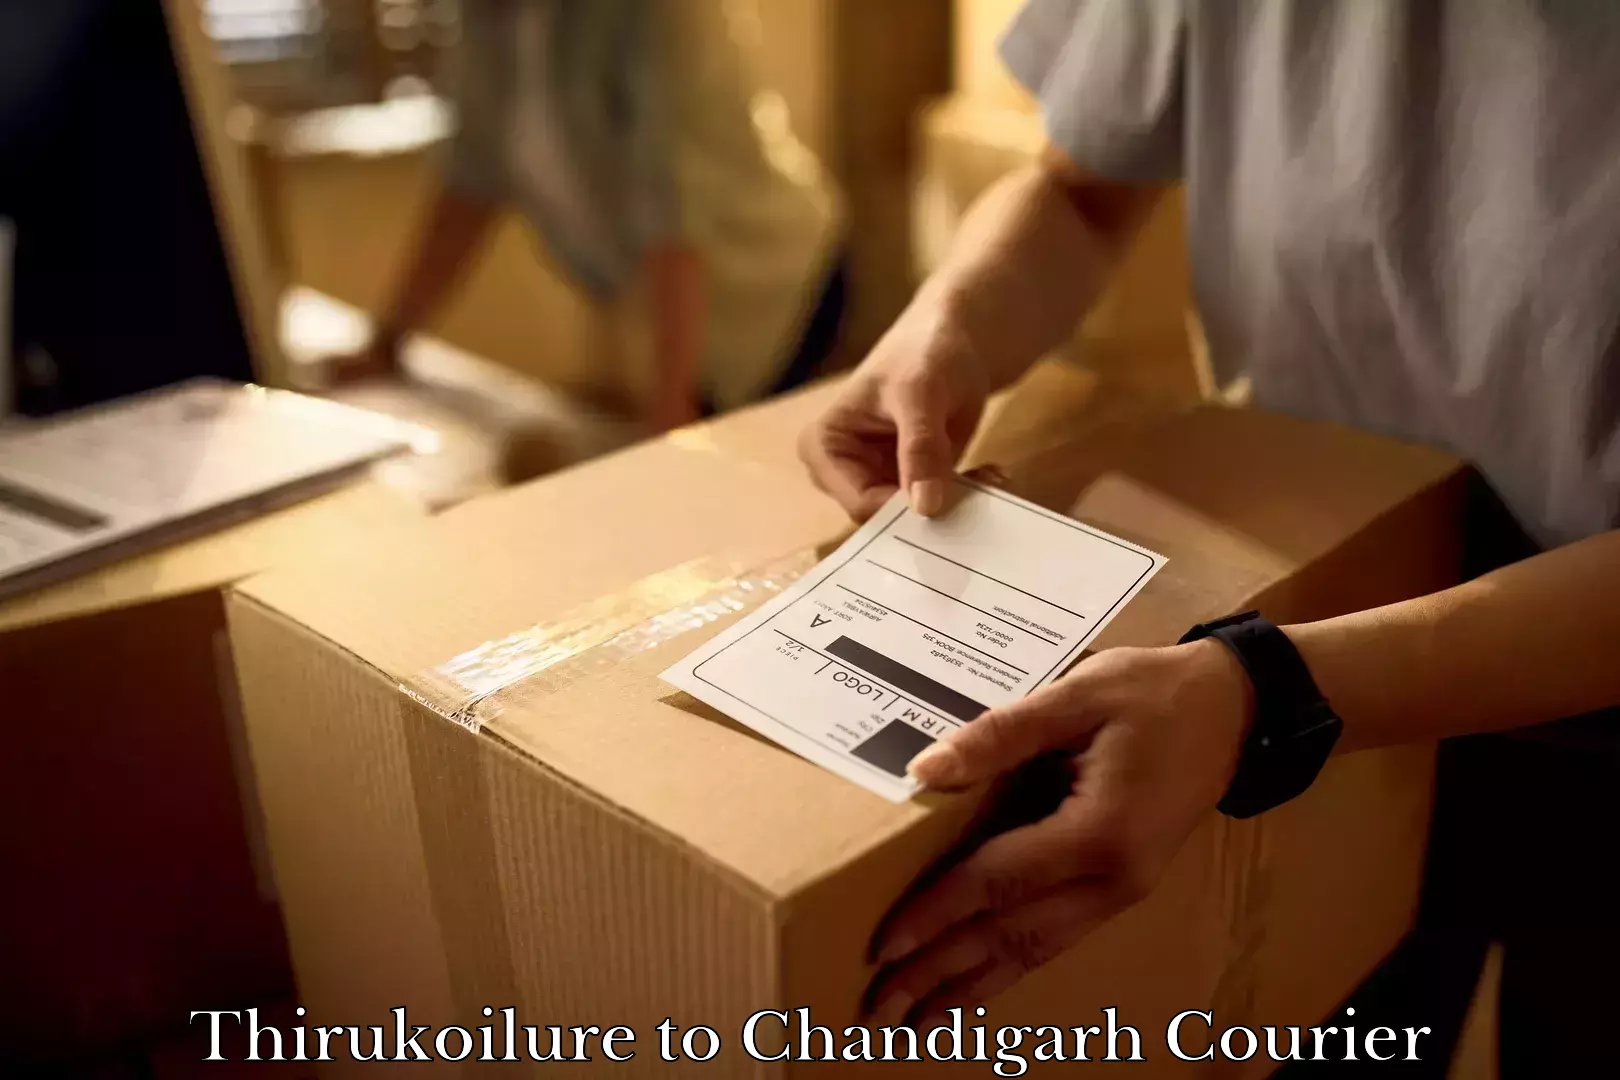 Household goods transport service Thirukoilure to Chandigarh